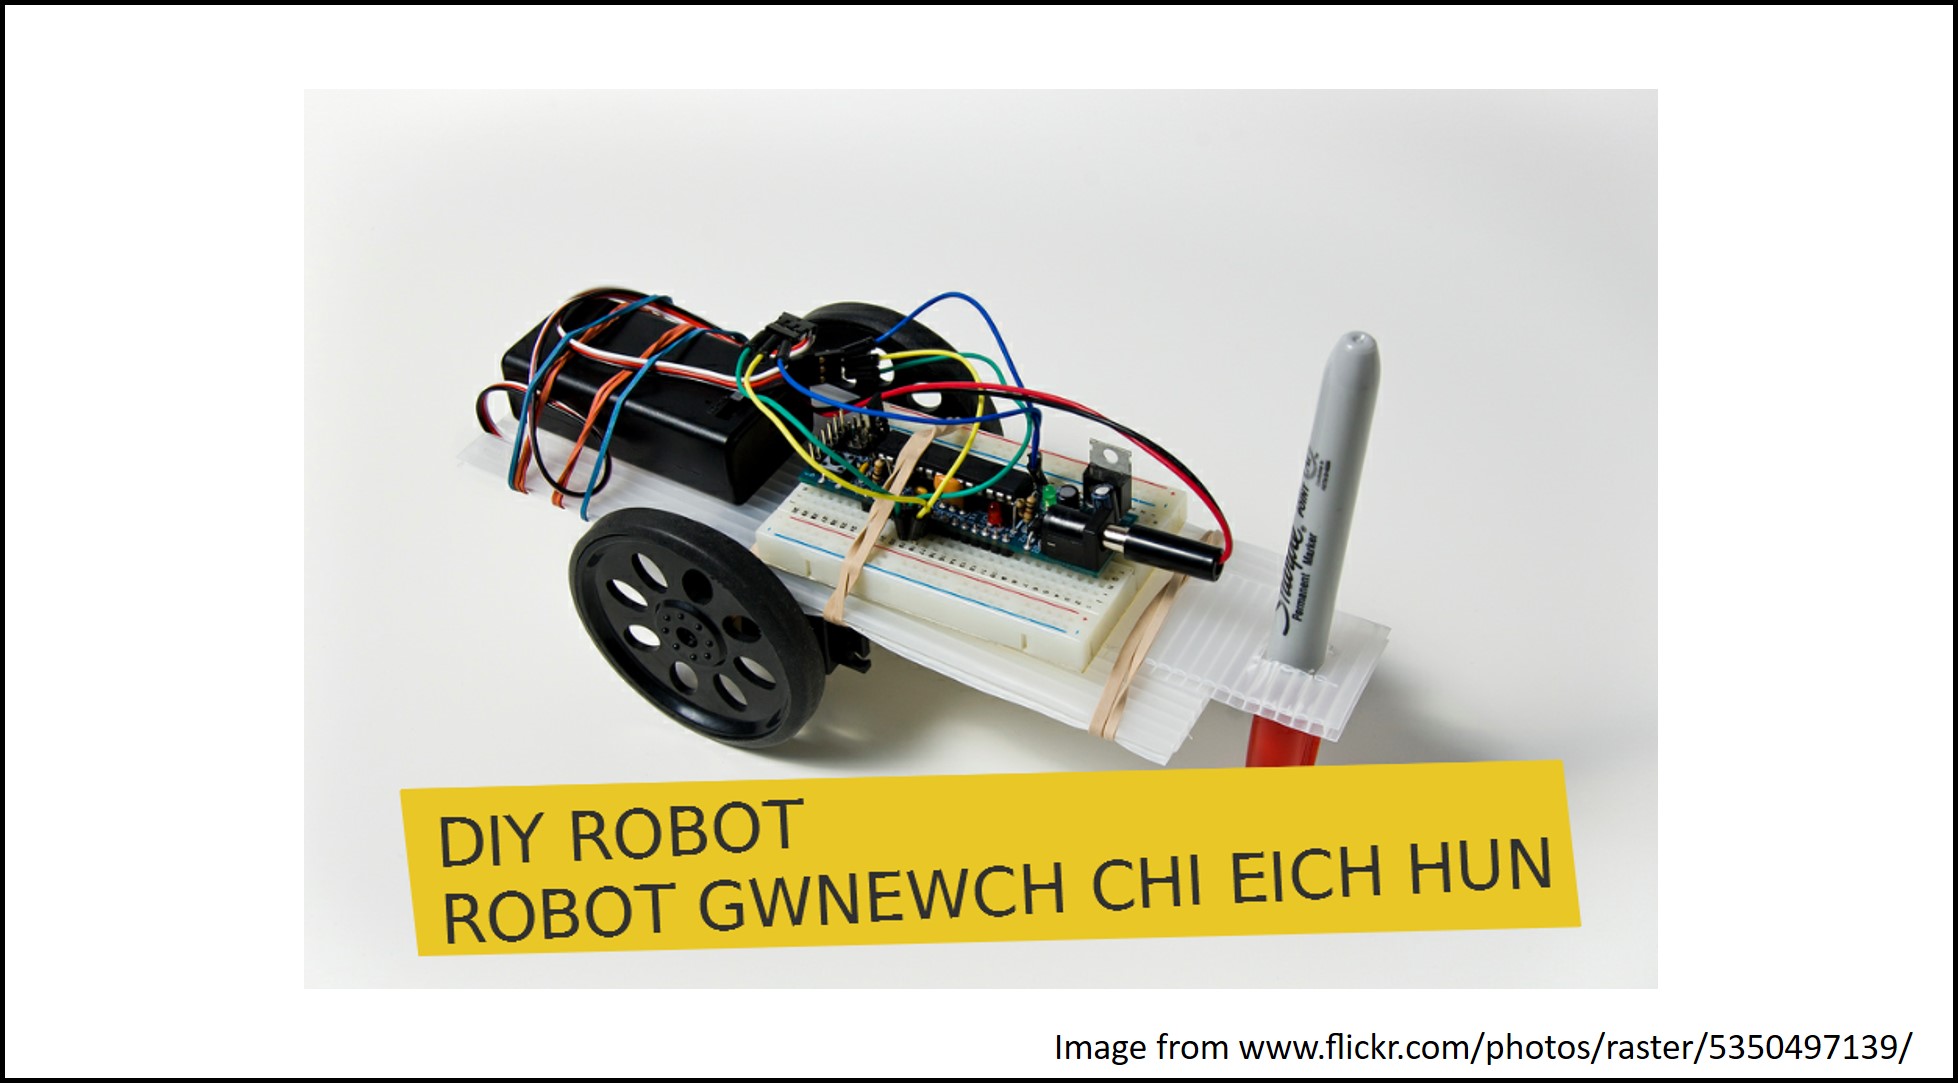 A DIY robot